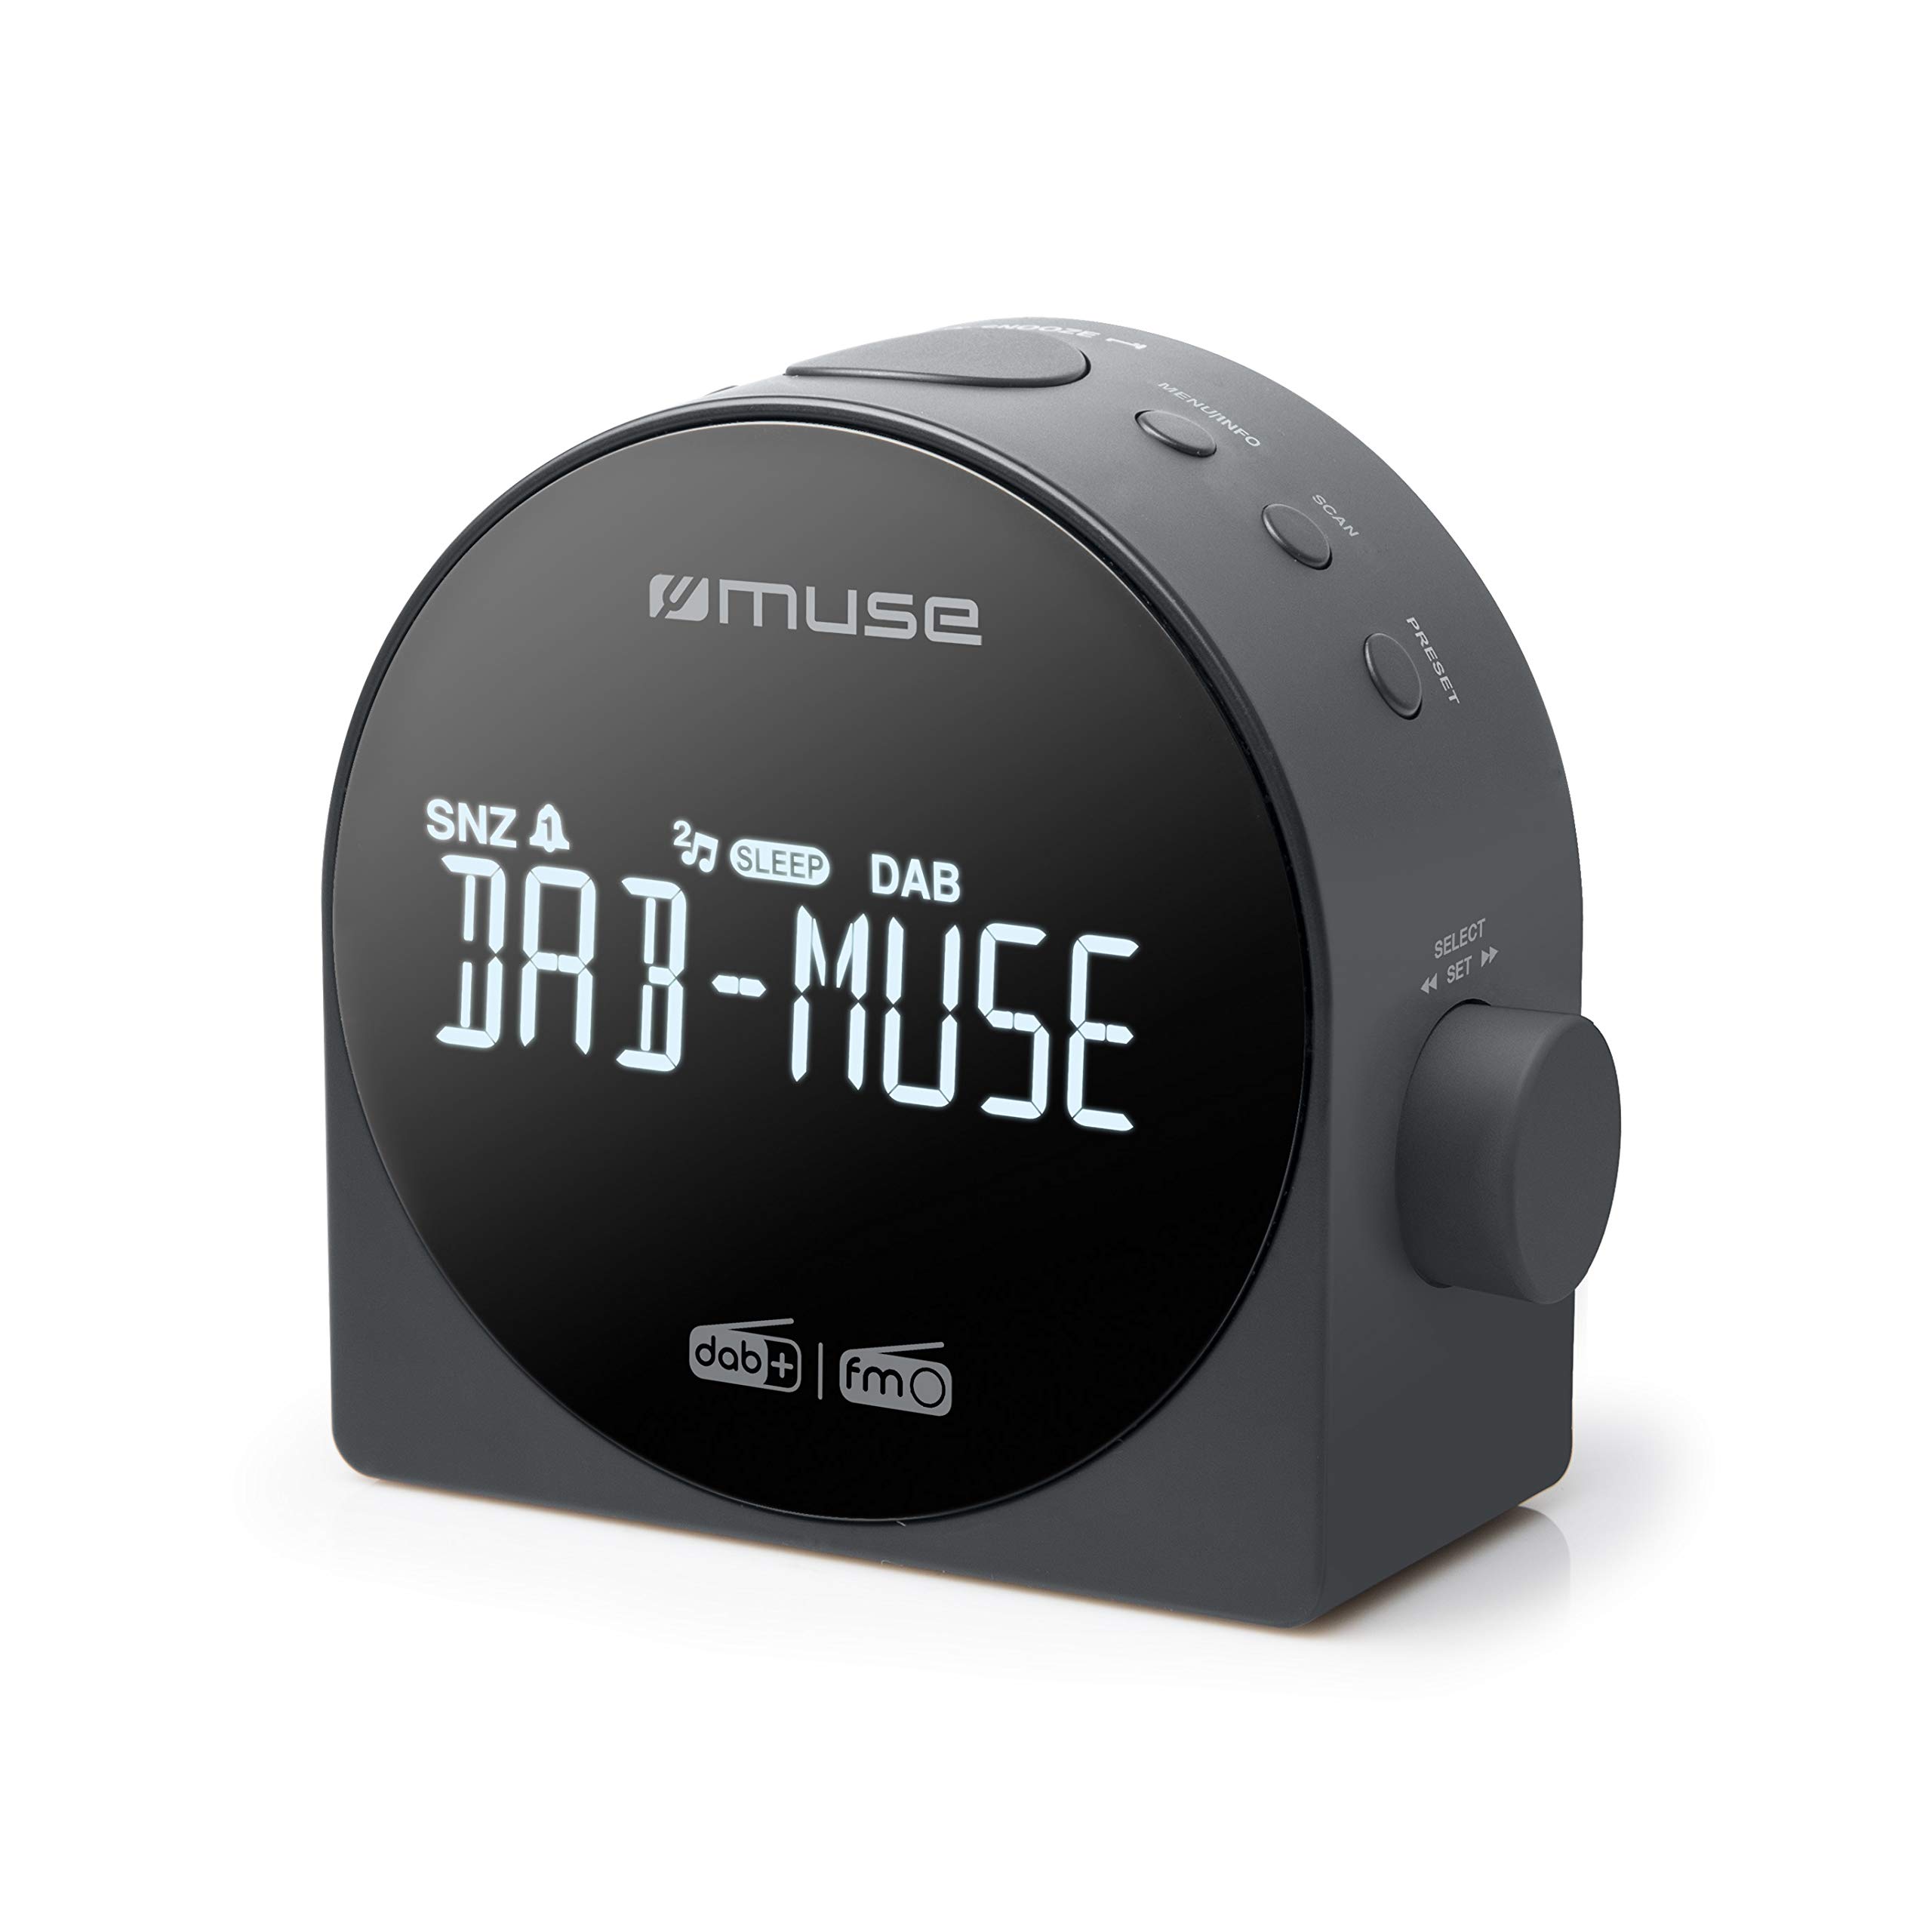 Muse M-185CDB schwarz Uhrenradio DAB+ DUAL-Alarm Radiowecker digital